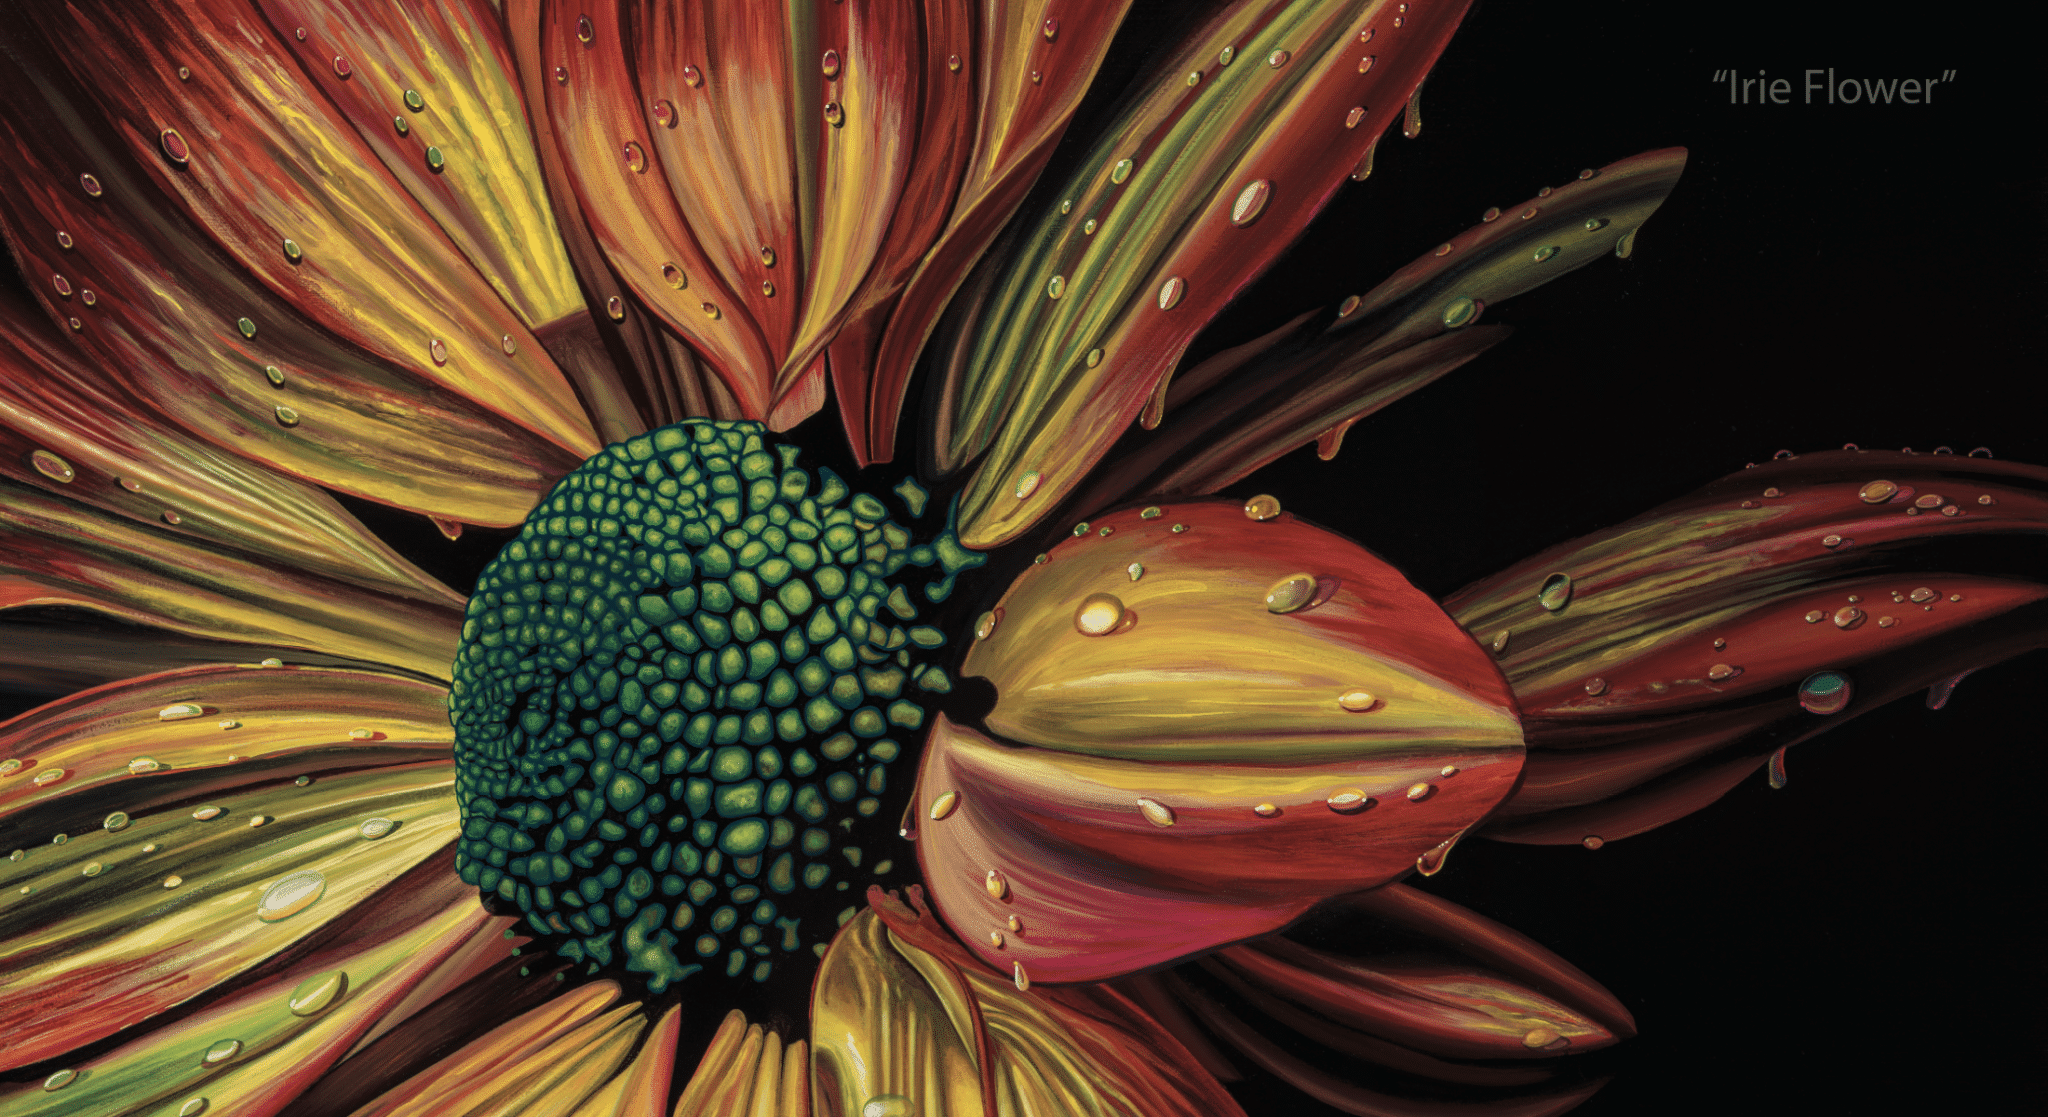 Scott Jacobs' flower painting, Irie Flower